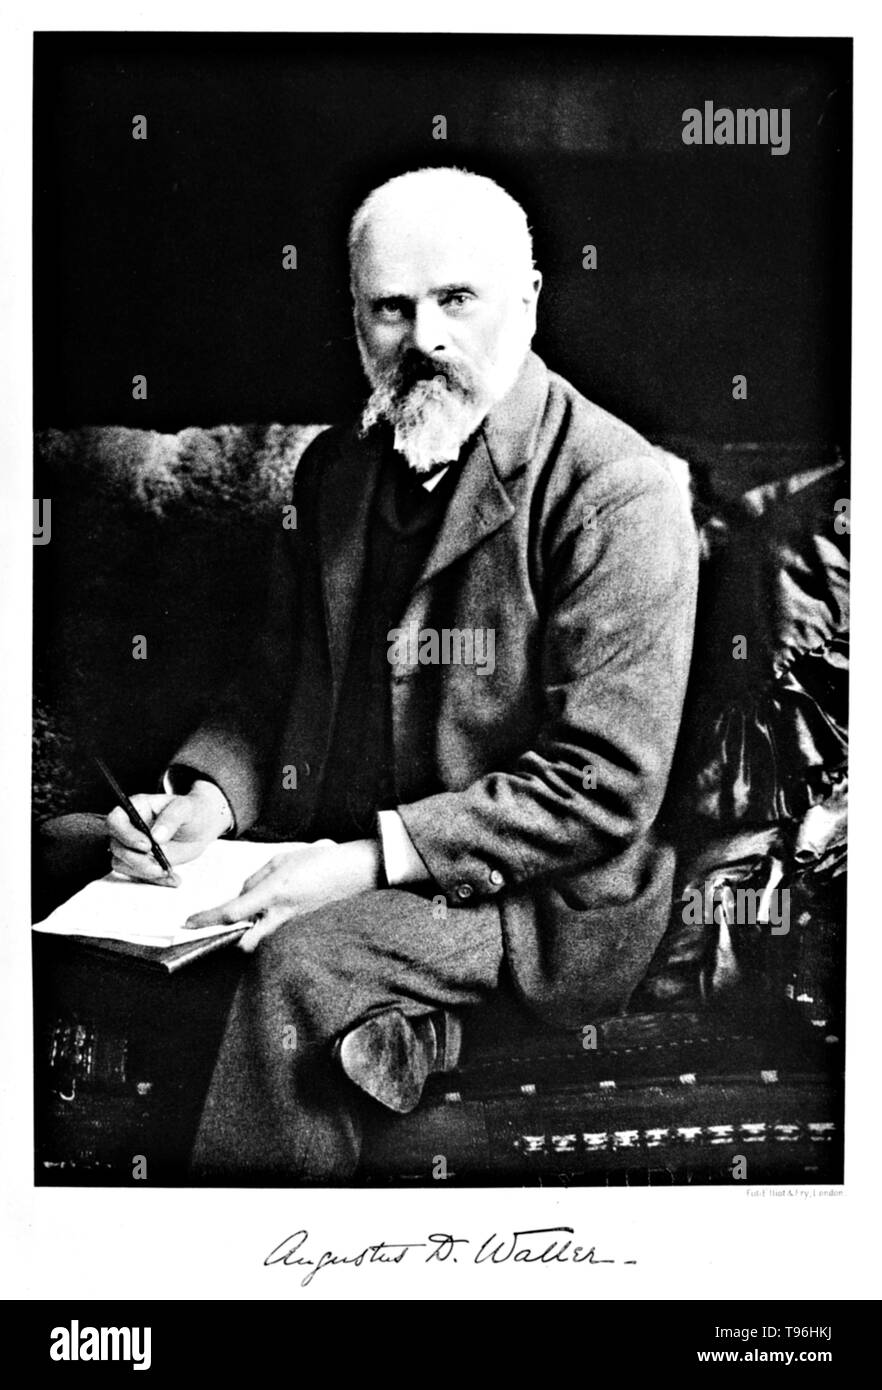 Augustus Desiré Waller (Juillet 18, 1856 - Mars 11, 1922) était un physiologiste britannique. Il a étudié la médecine à l'Université d'Aberdeen, où il s'est qualifié en 1878 et obtenu son doctorat en 1881. En 1884 il devint professeur de physiologie à l'Hôpital St Mary. En 1887 il s'est servi d'un électromètre capillaire pour enregistrer le premier des droits de l'électrocardiogramme. Il a créé la première machine ECG pratique avec des électrodes de surface. Il a donné des conférences sur elle dans l'Europe et l'Amérique, souvent à l'aide de son chien Jimmy dans ses démonstrations de l'ECG. Banque D'Images